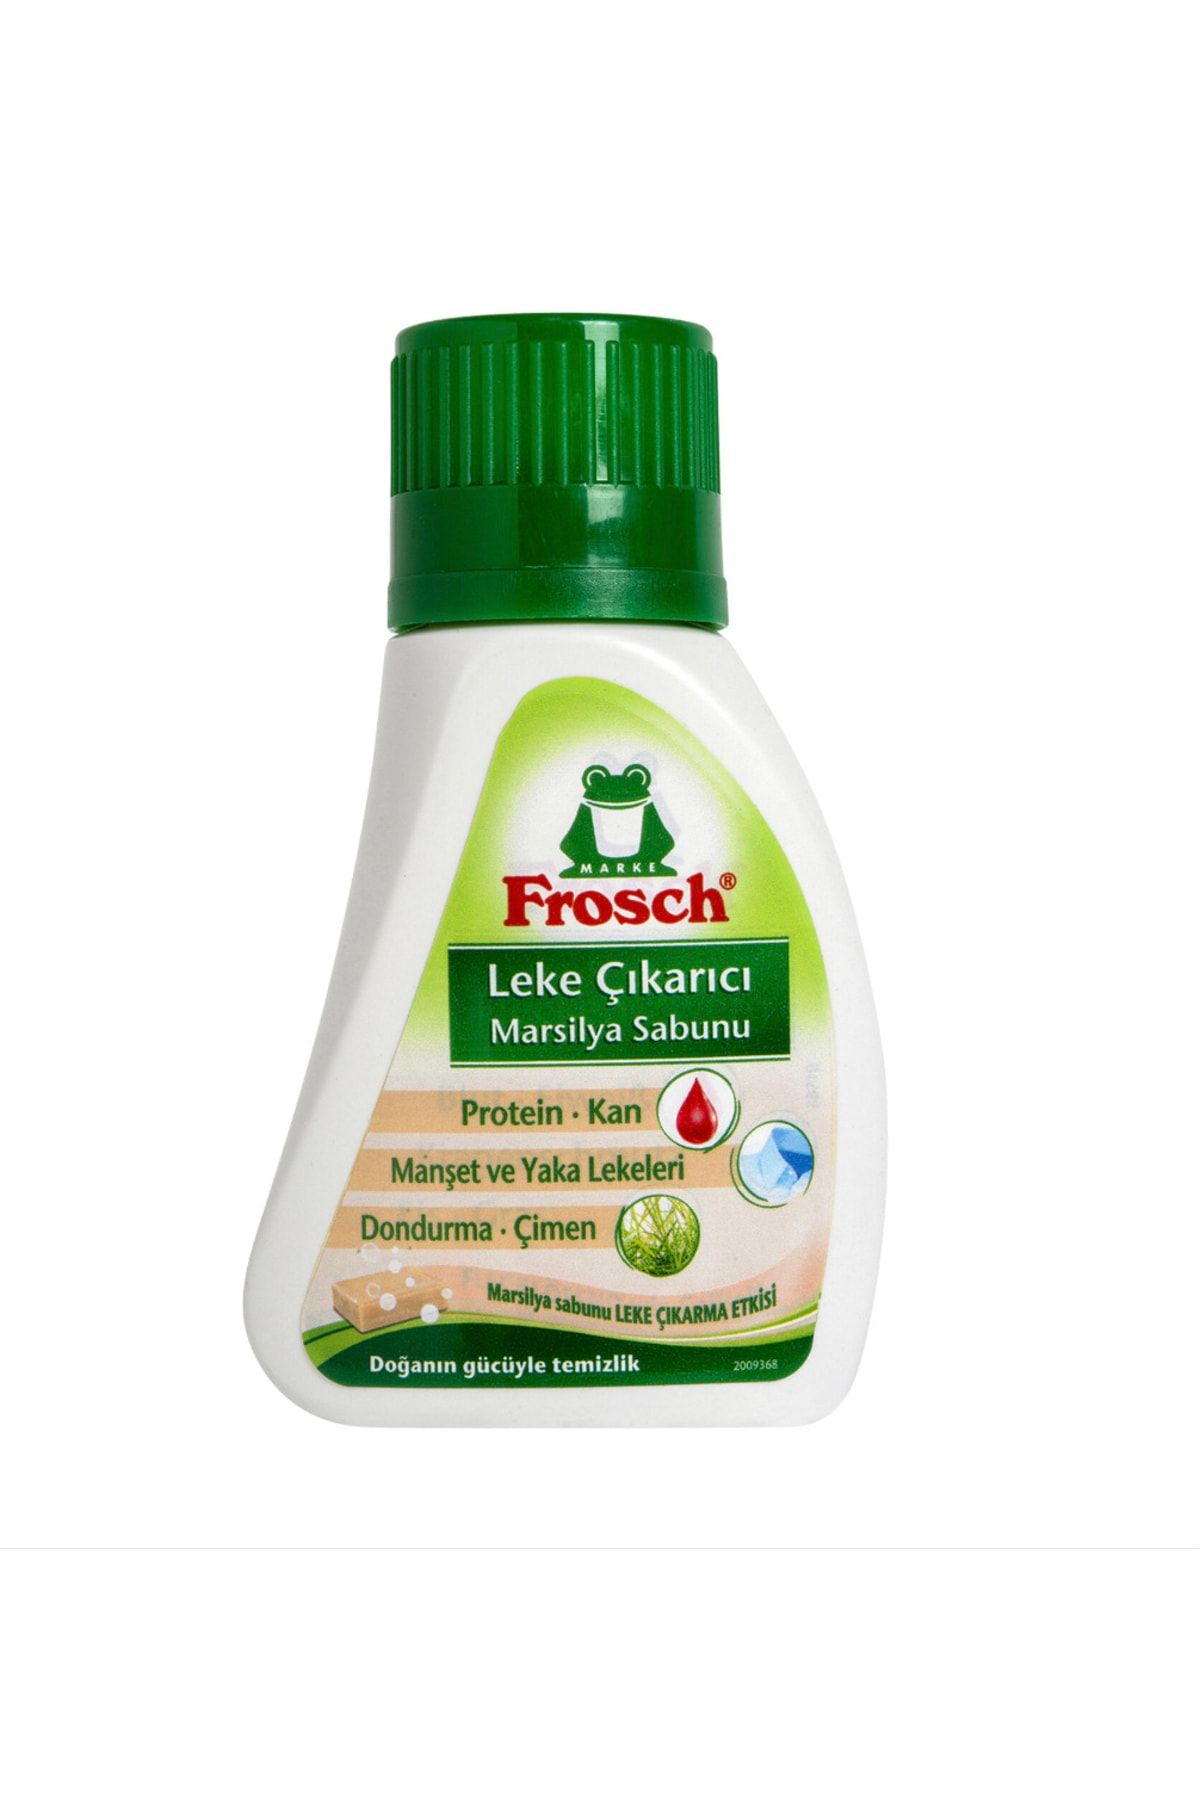 Frosch Leke Çıkarıcı Marsilya Sabunu 75 ml (protein, Kan, Manşet Ve Yaka, Dondurma, Çimen Lekeleri )